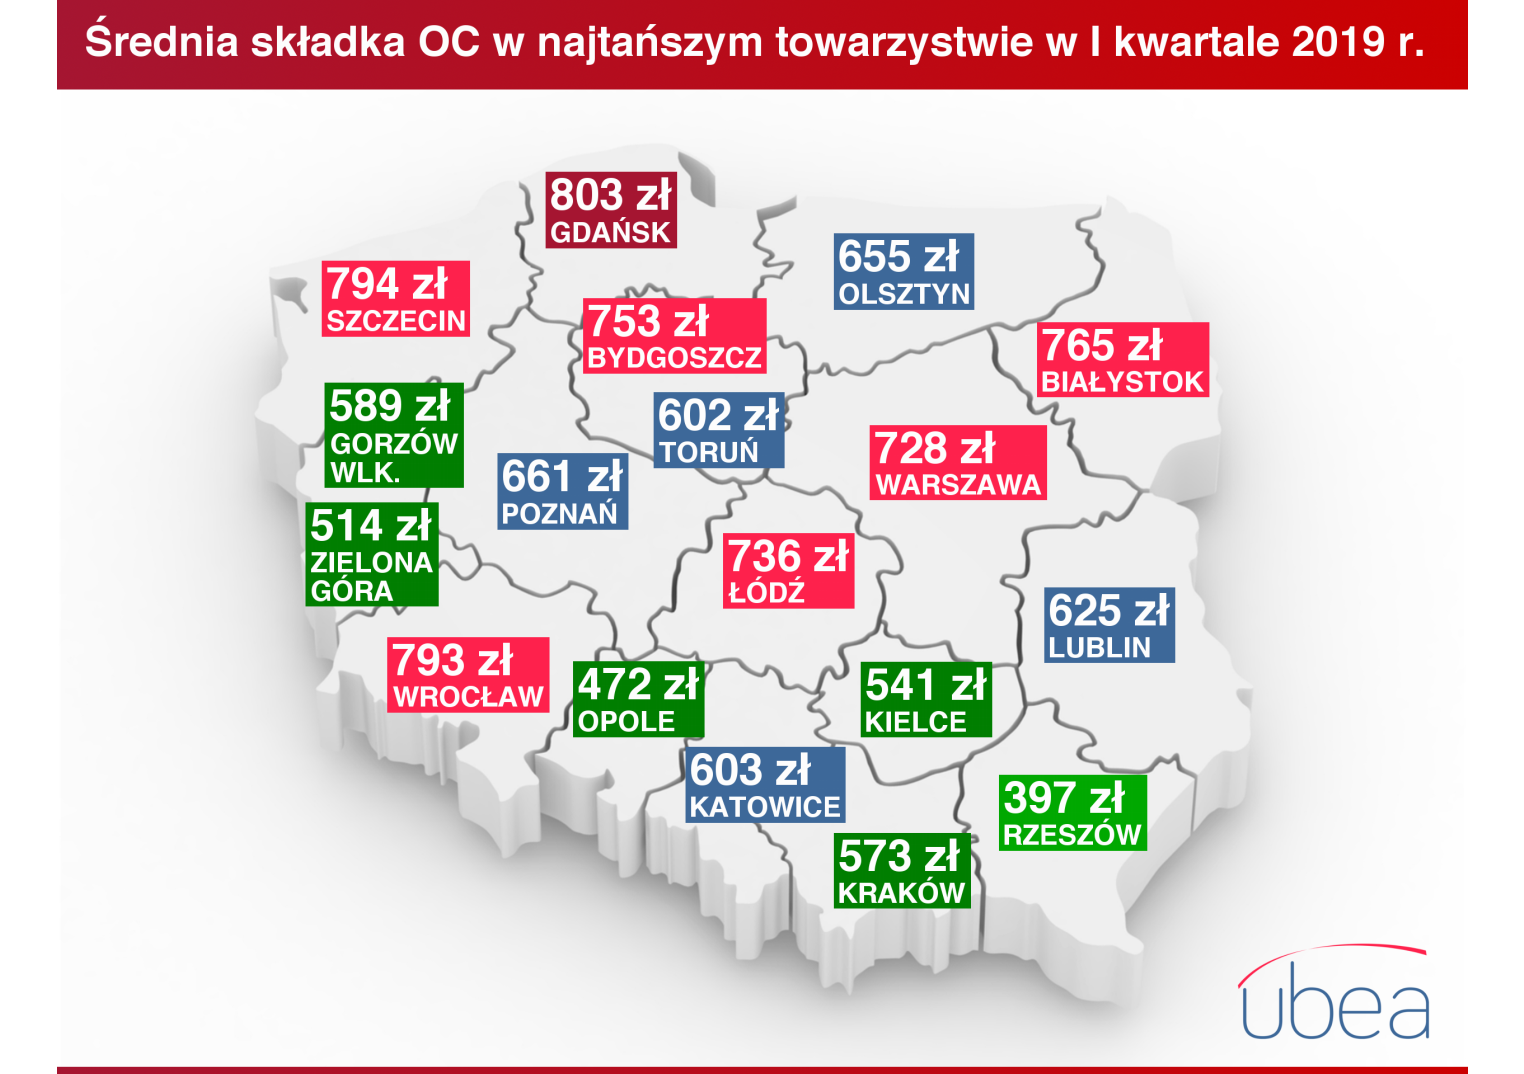 Ceny OC I kw. 19 miasta Ubea 25.04 – infografika